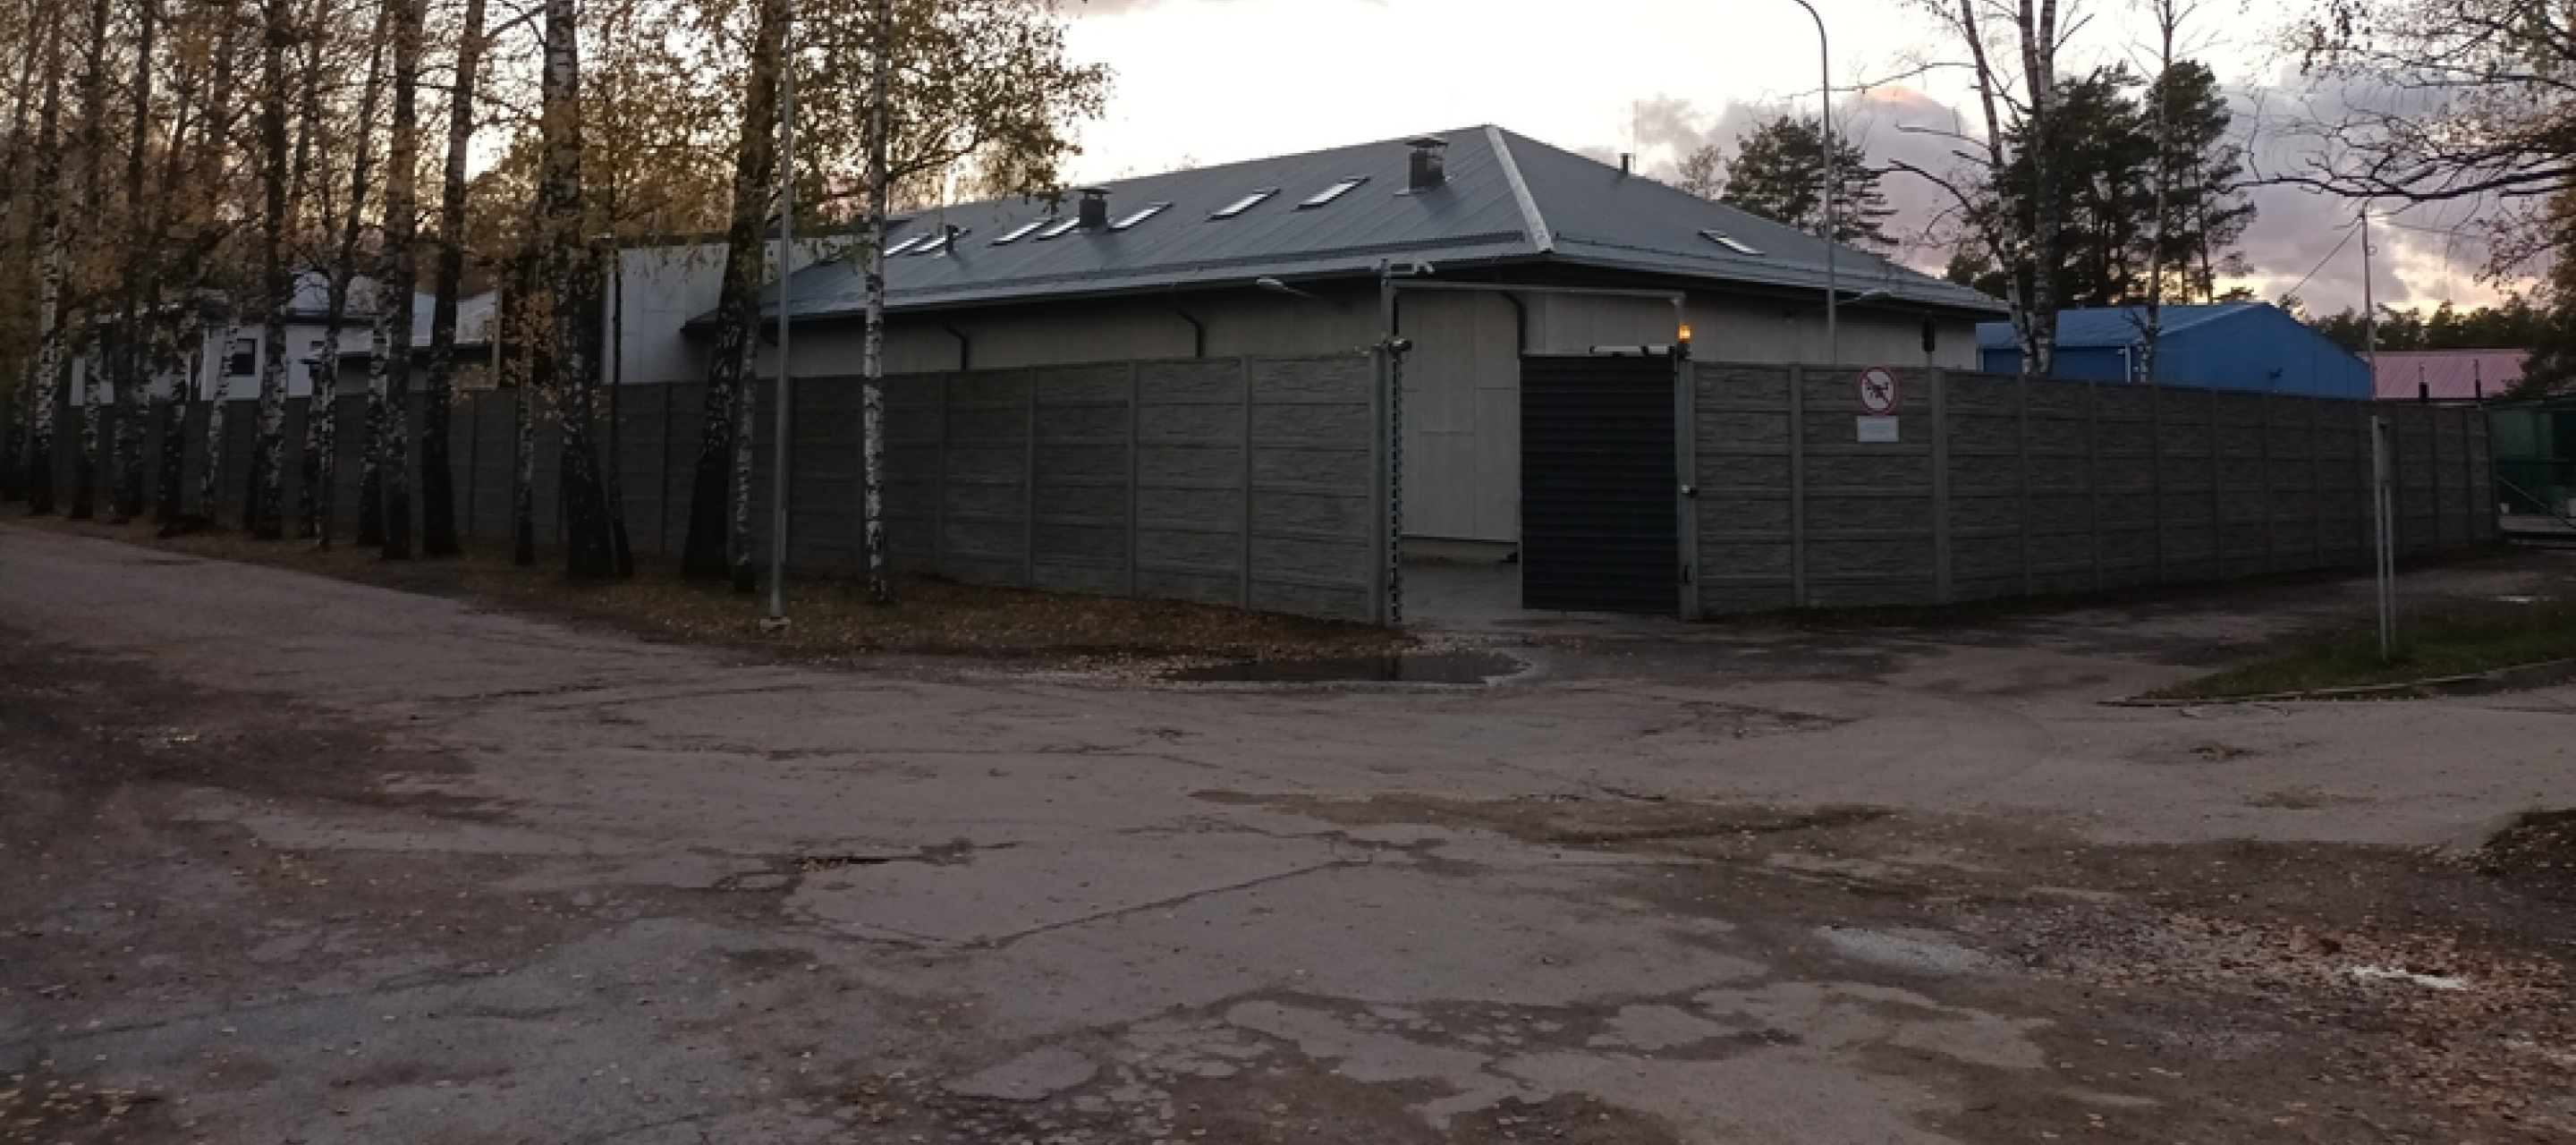 Lettland, Muciniecki: Haupteingang der Haftanstalt für Migrant*innen